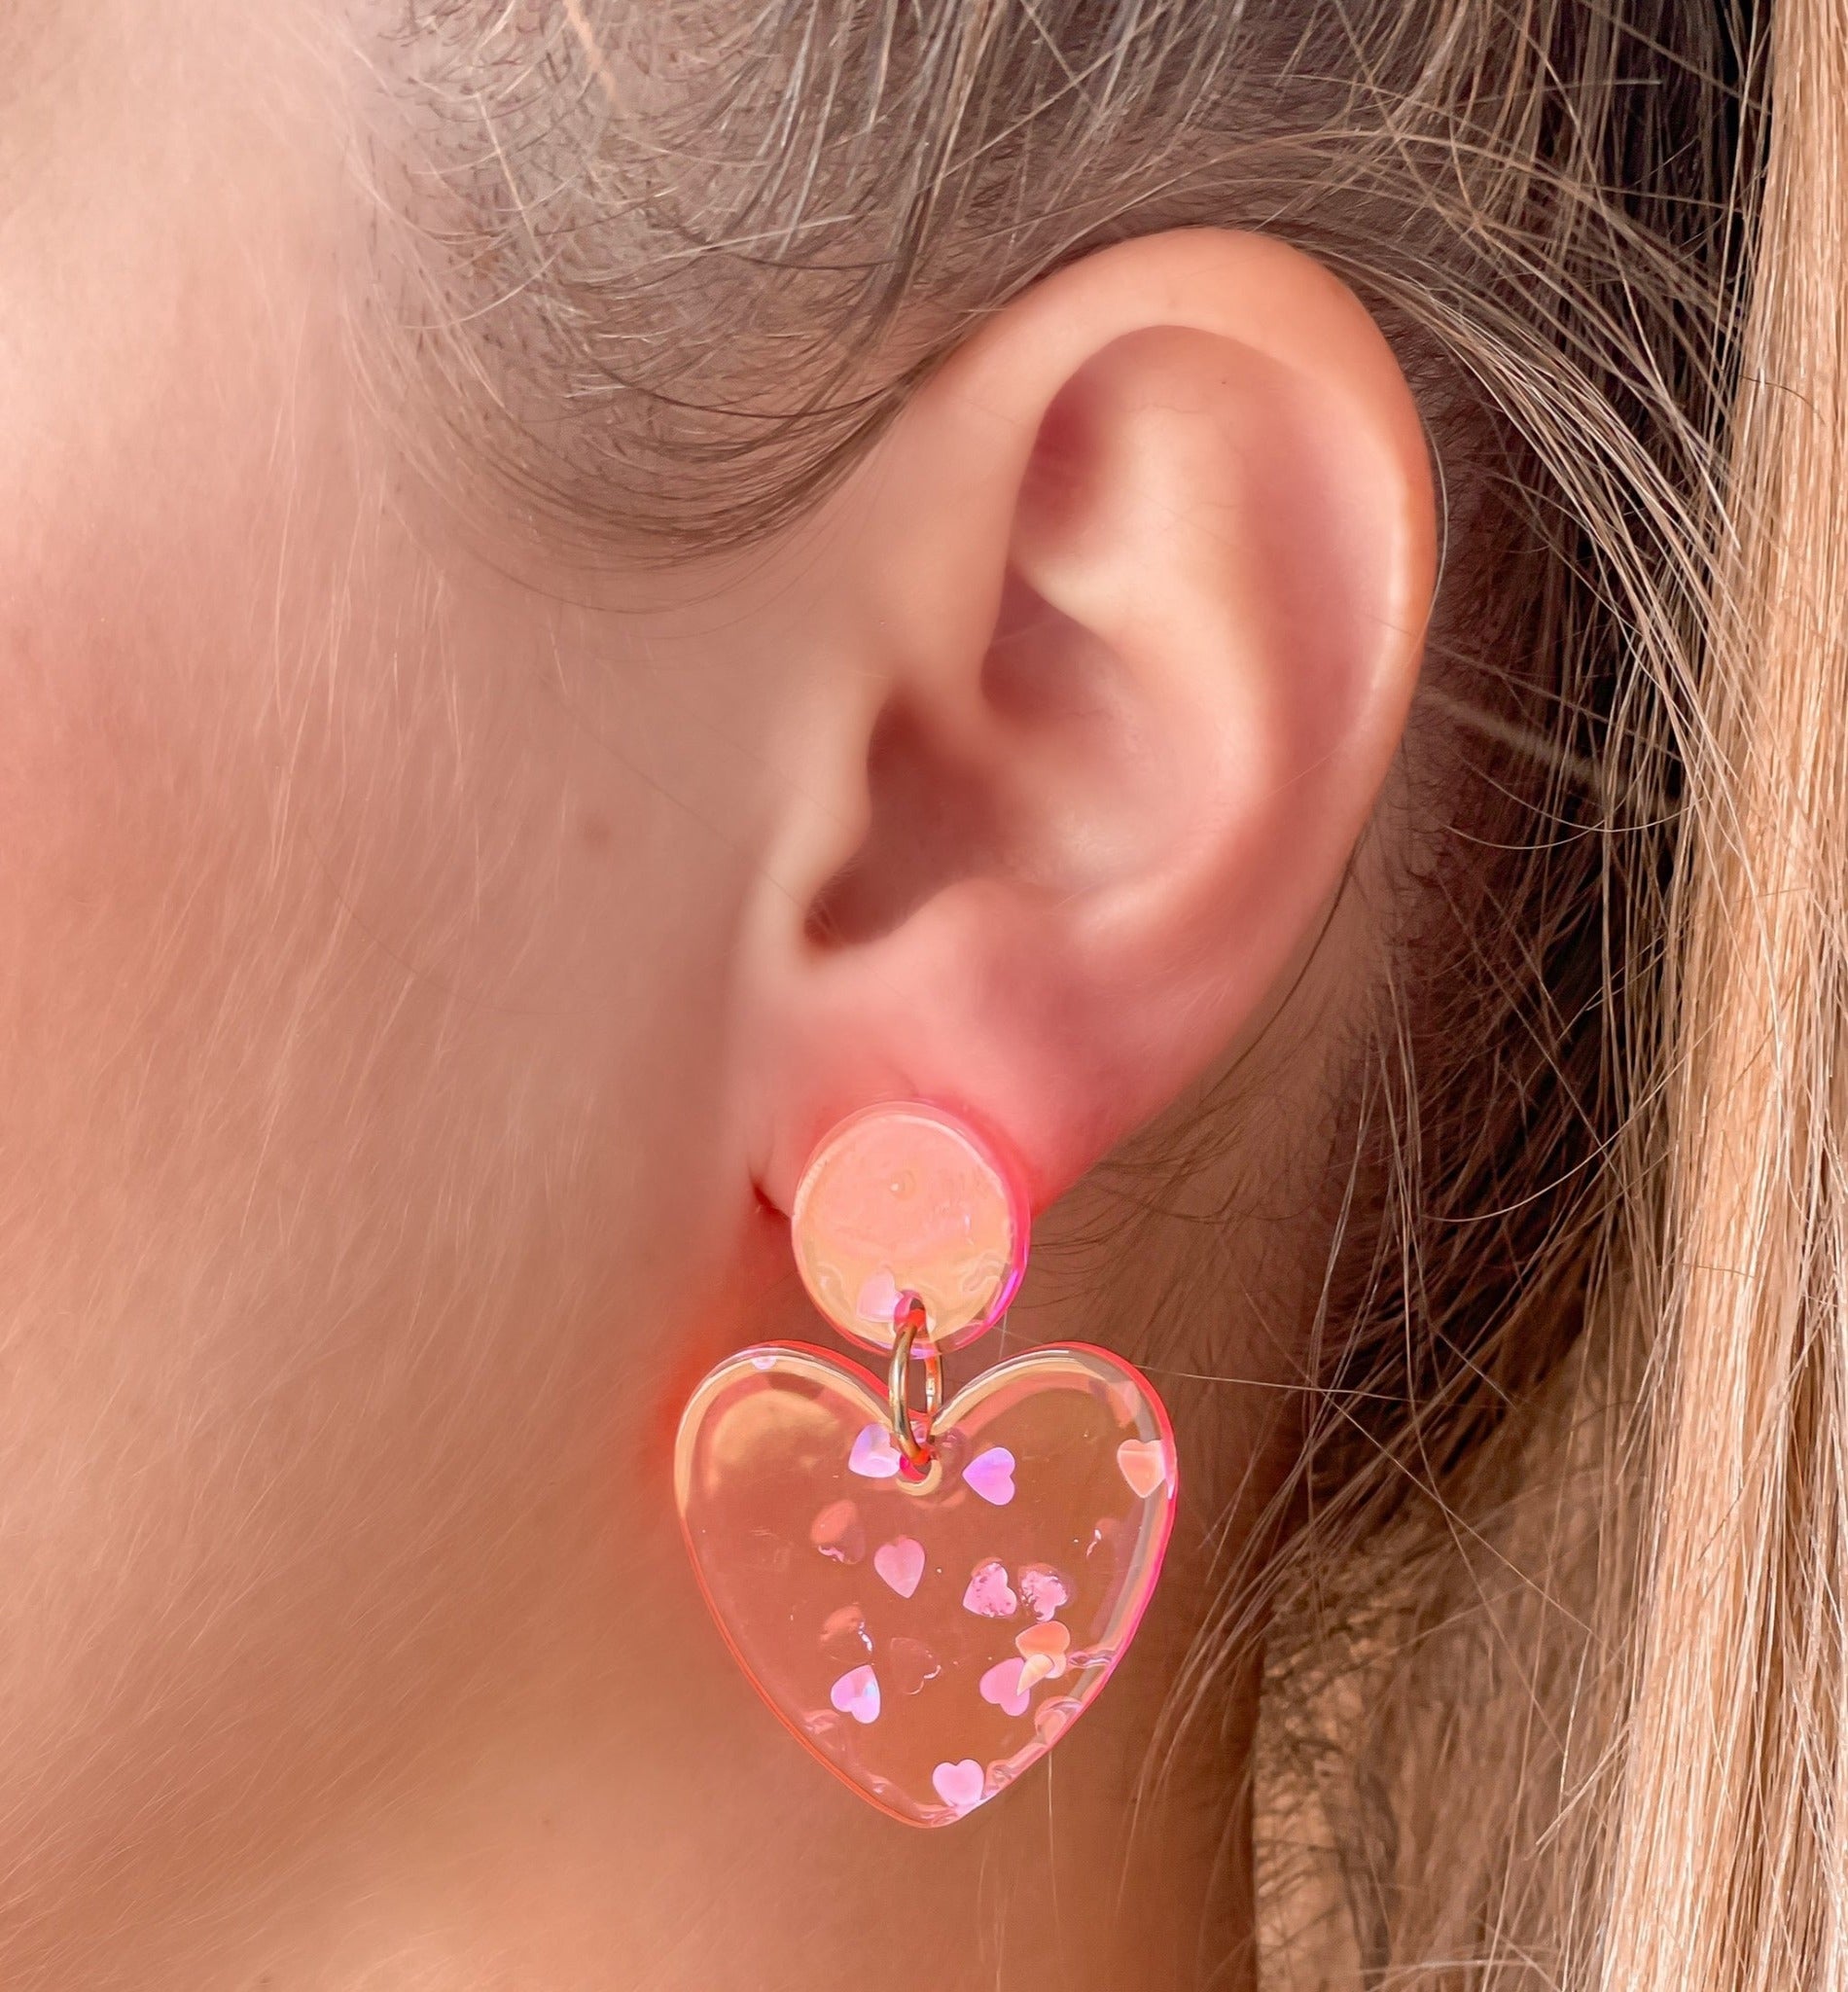 Silver Confetti Heart Dangle Earrings - Neon Pink